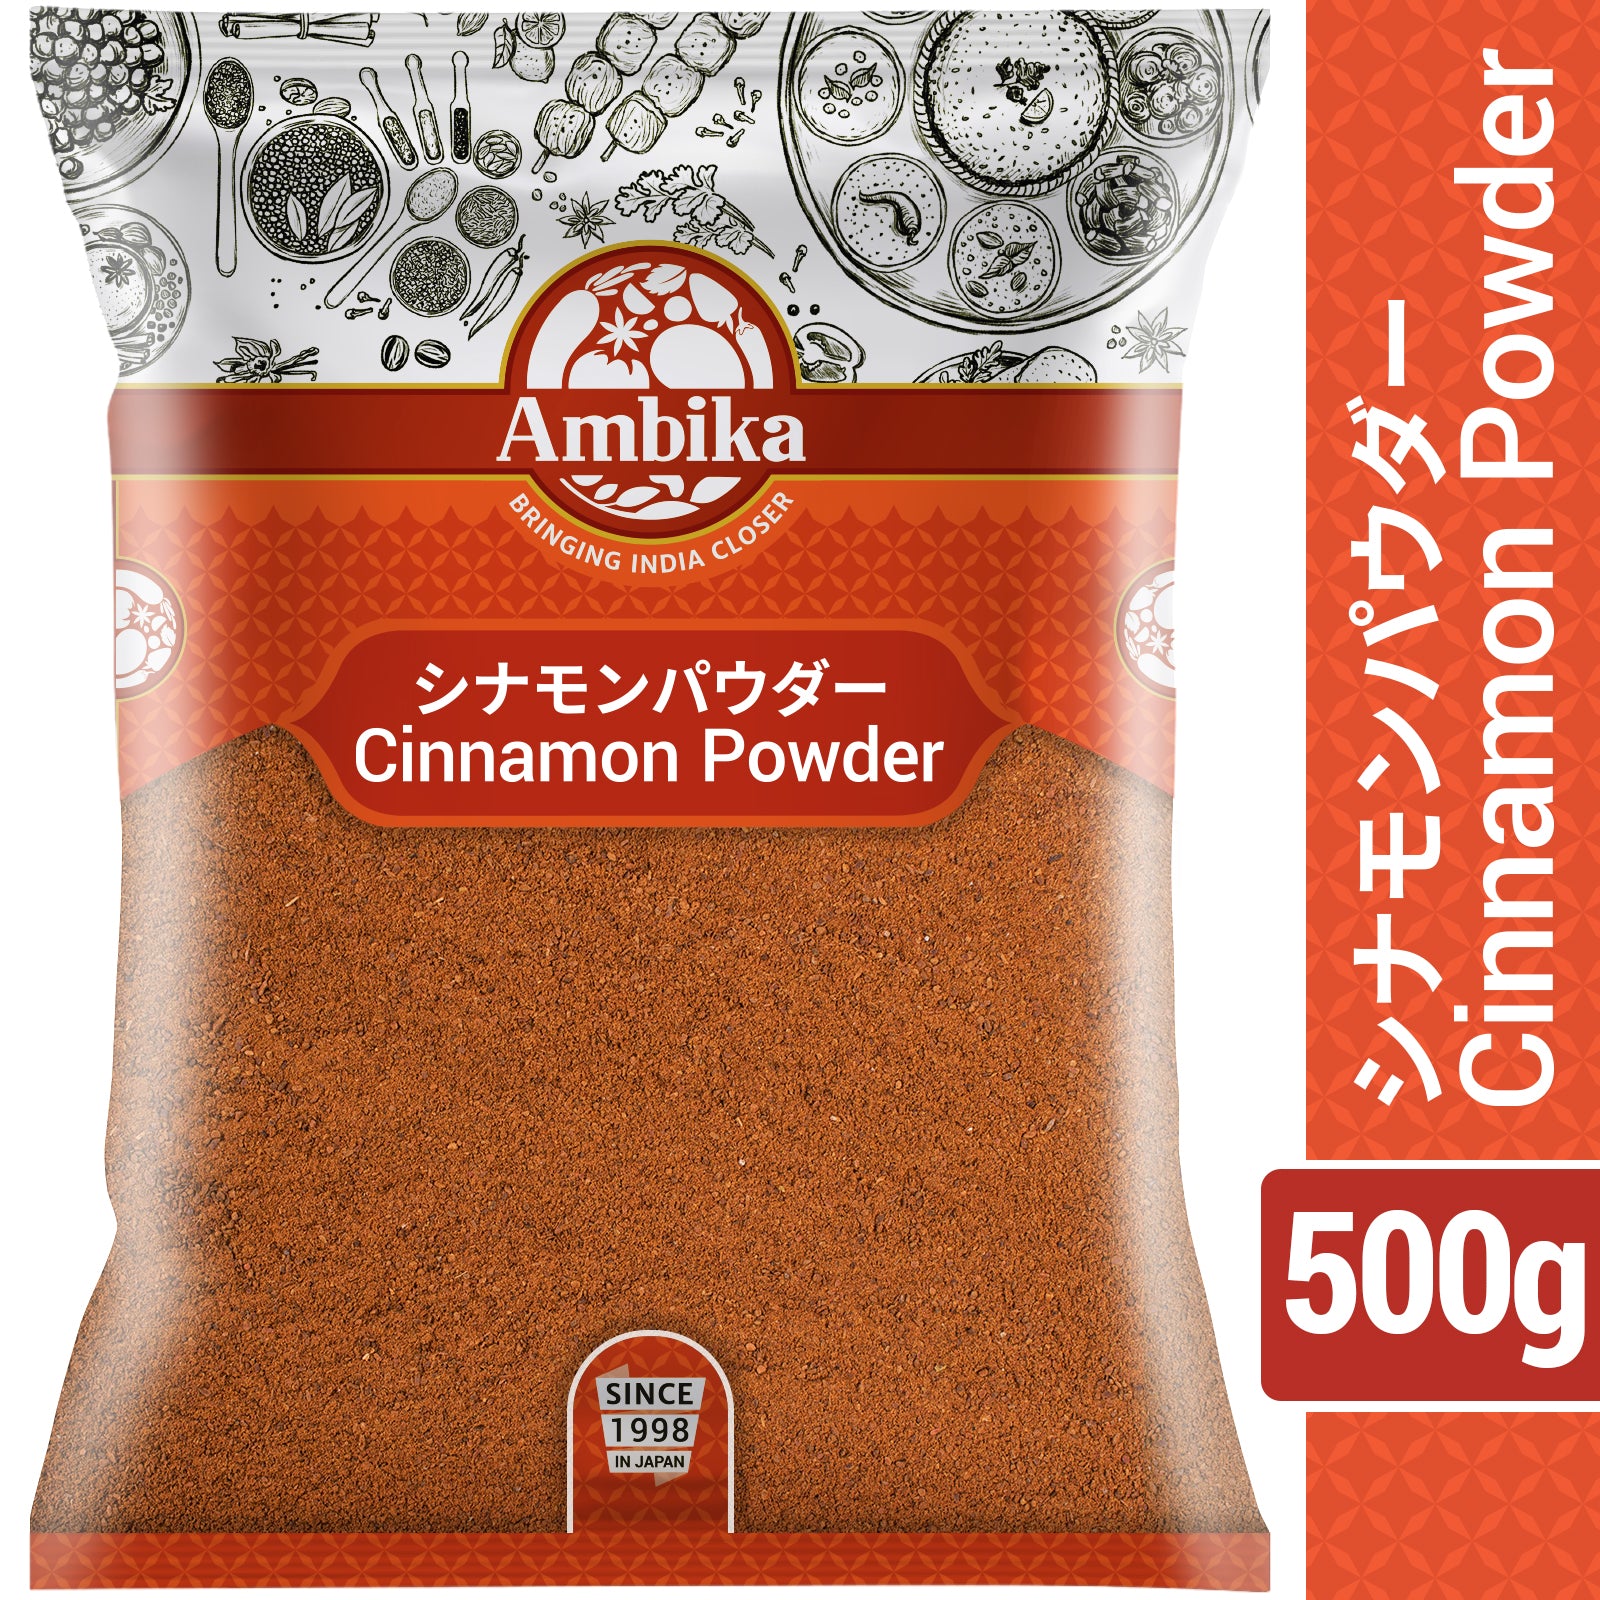 (Ambika) Cinnamon Powder 500g